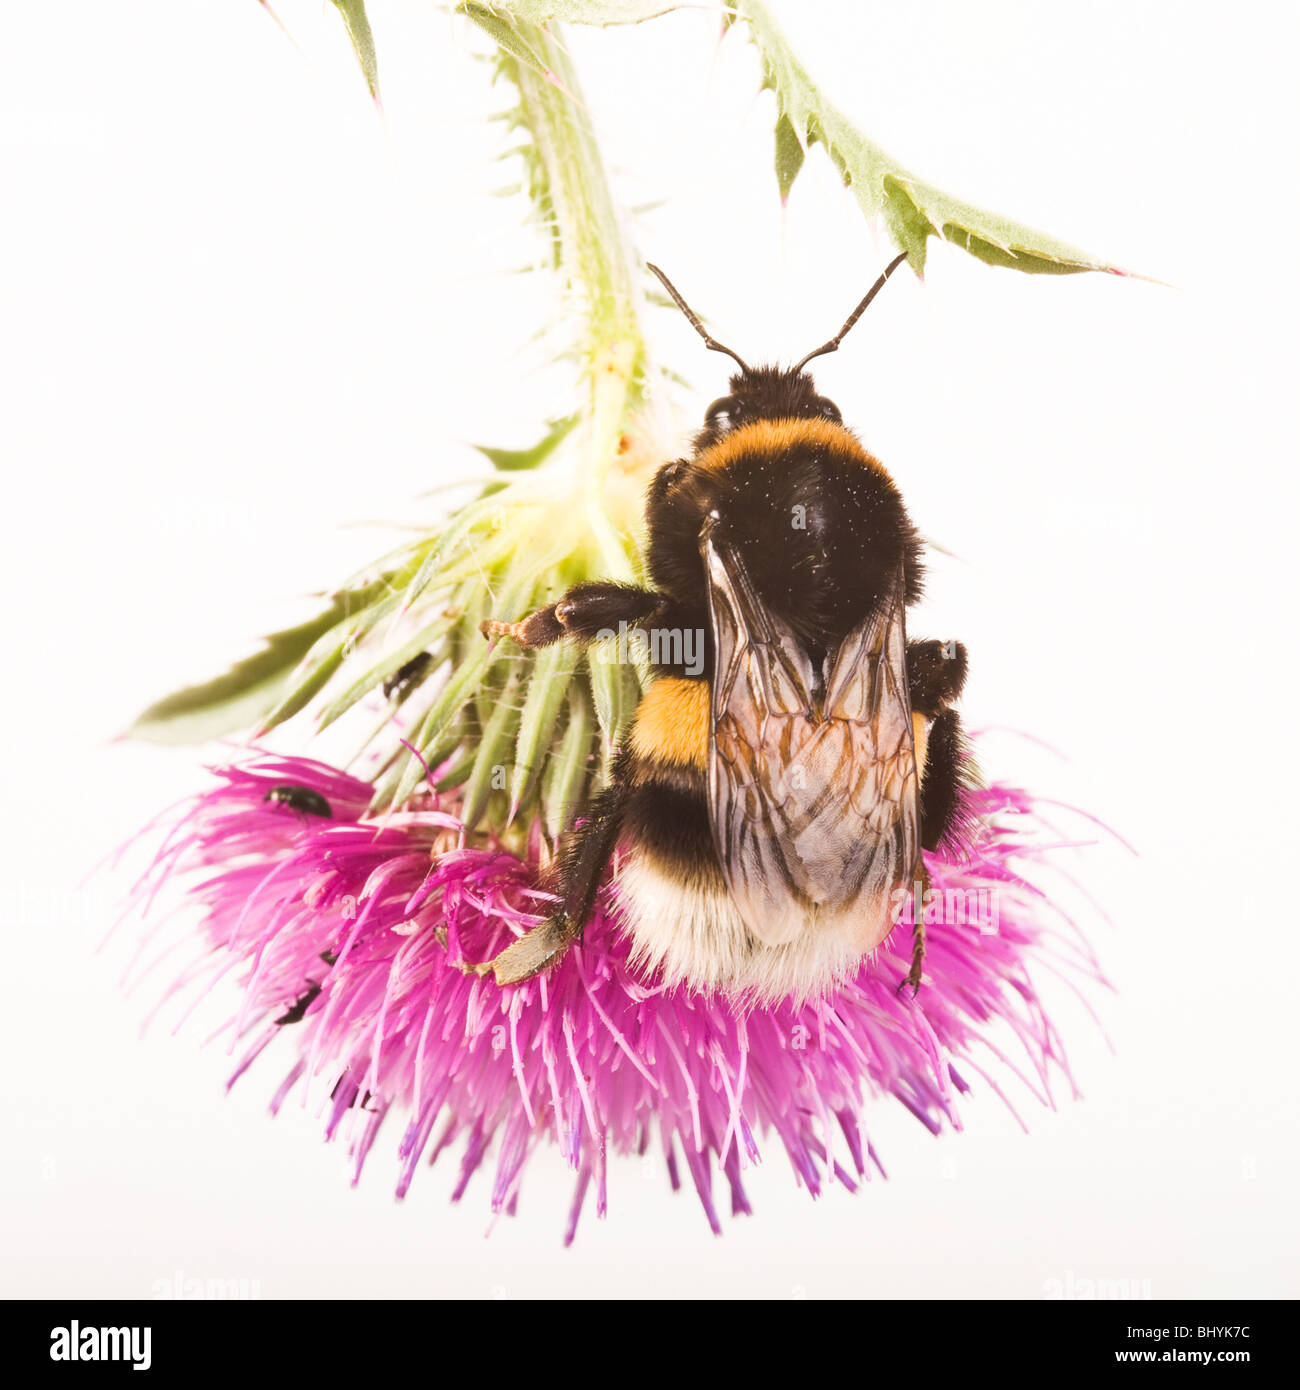 Terra di grandi dimensioni bumblebee [Bombus terrestris] su un thistle Foto Stock